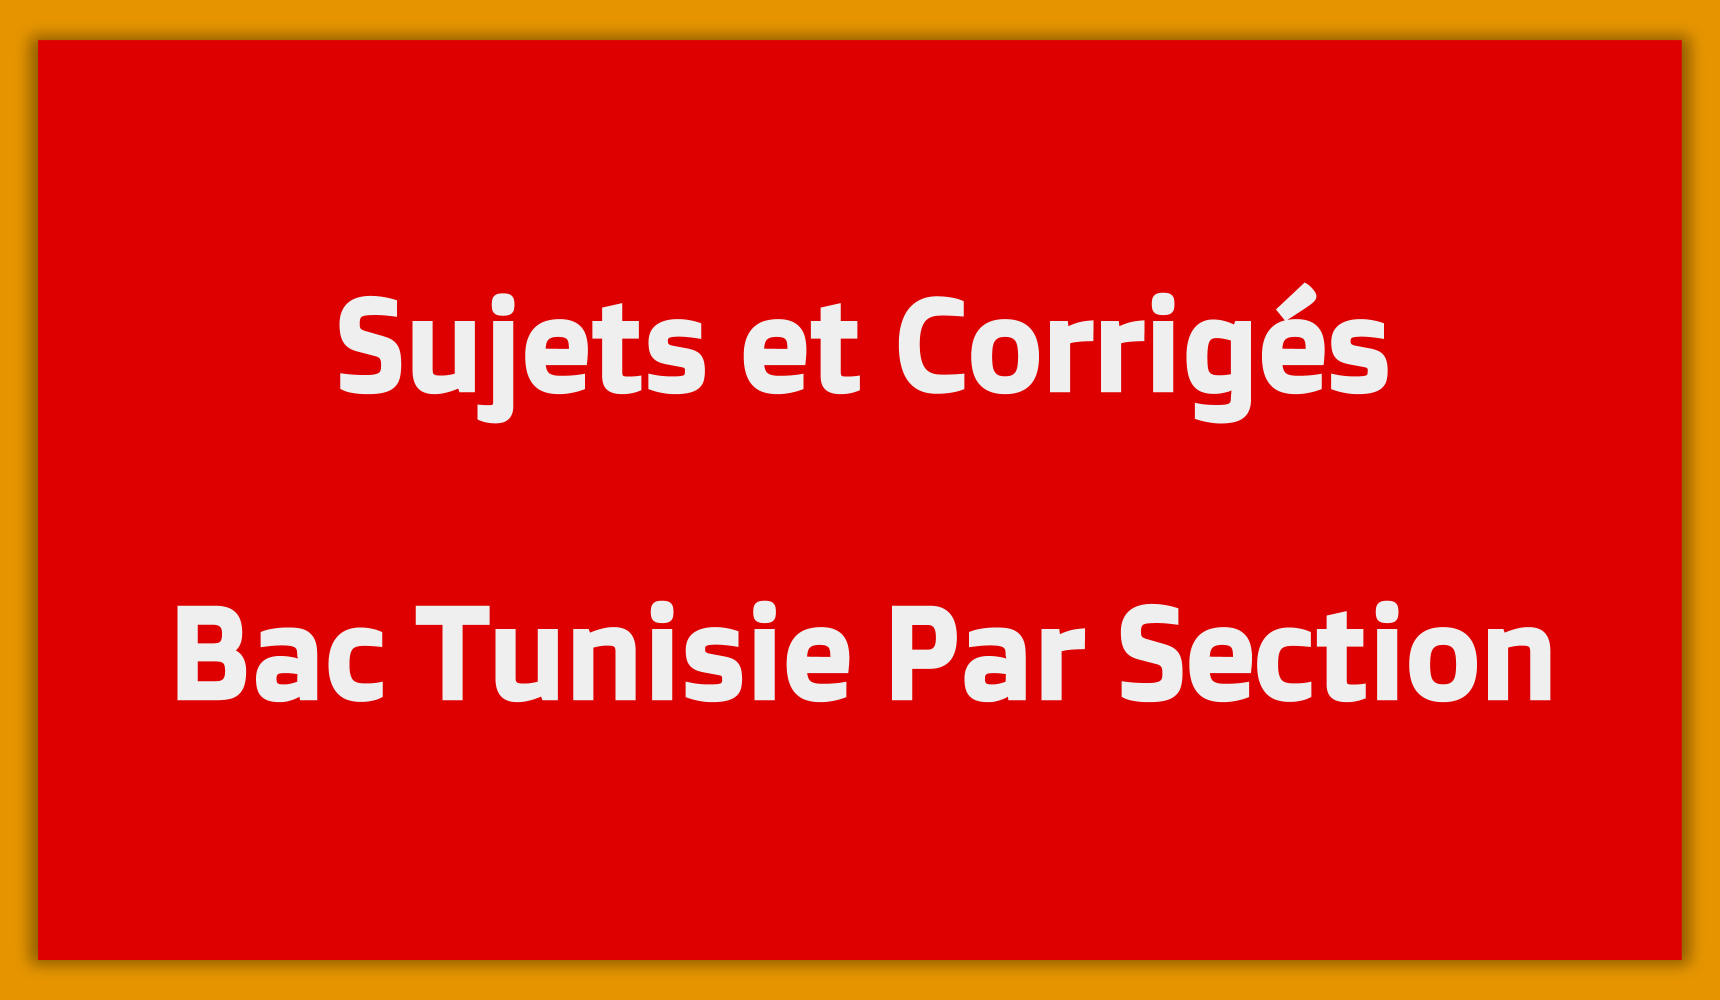 Sujets et Corrigés du Bac en Tunisie par Section